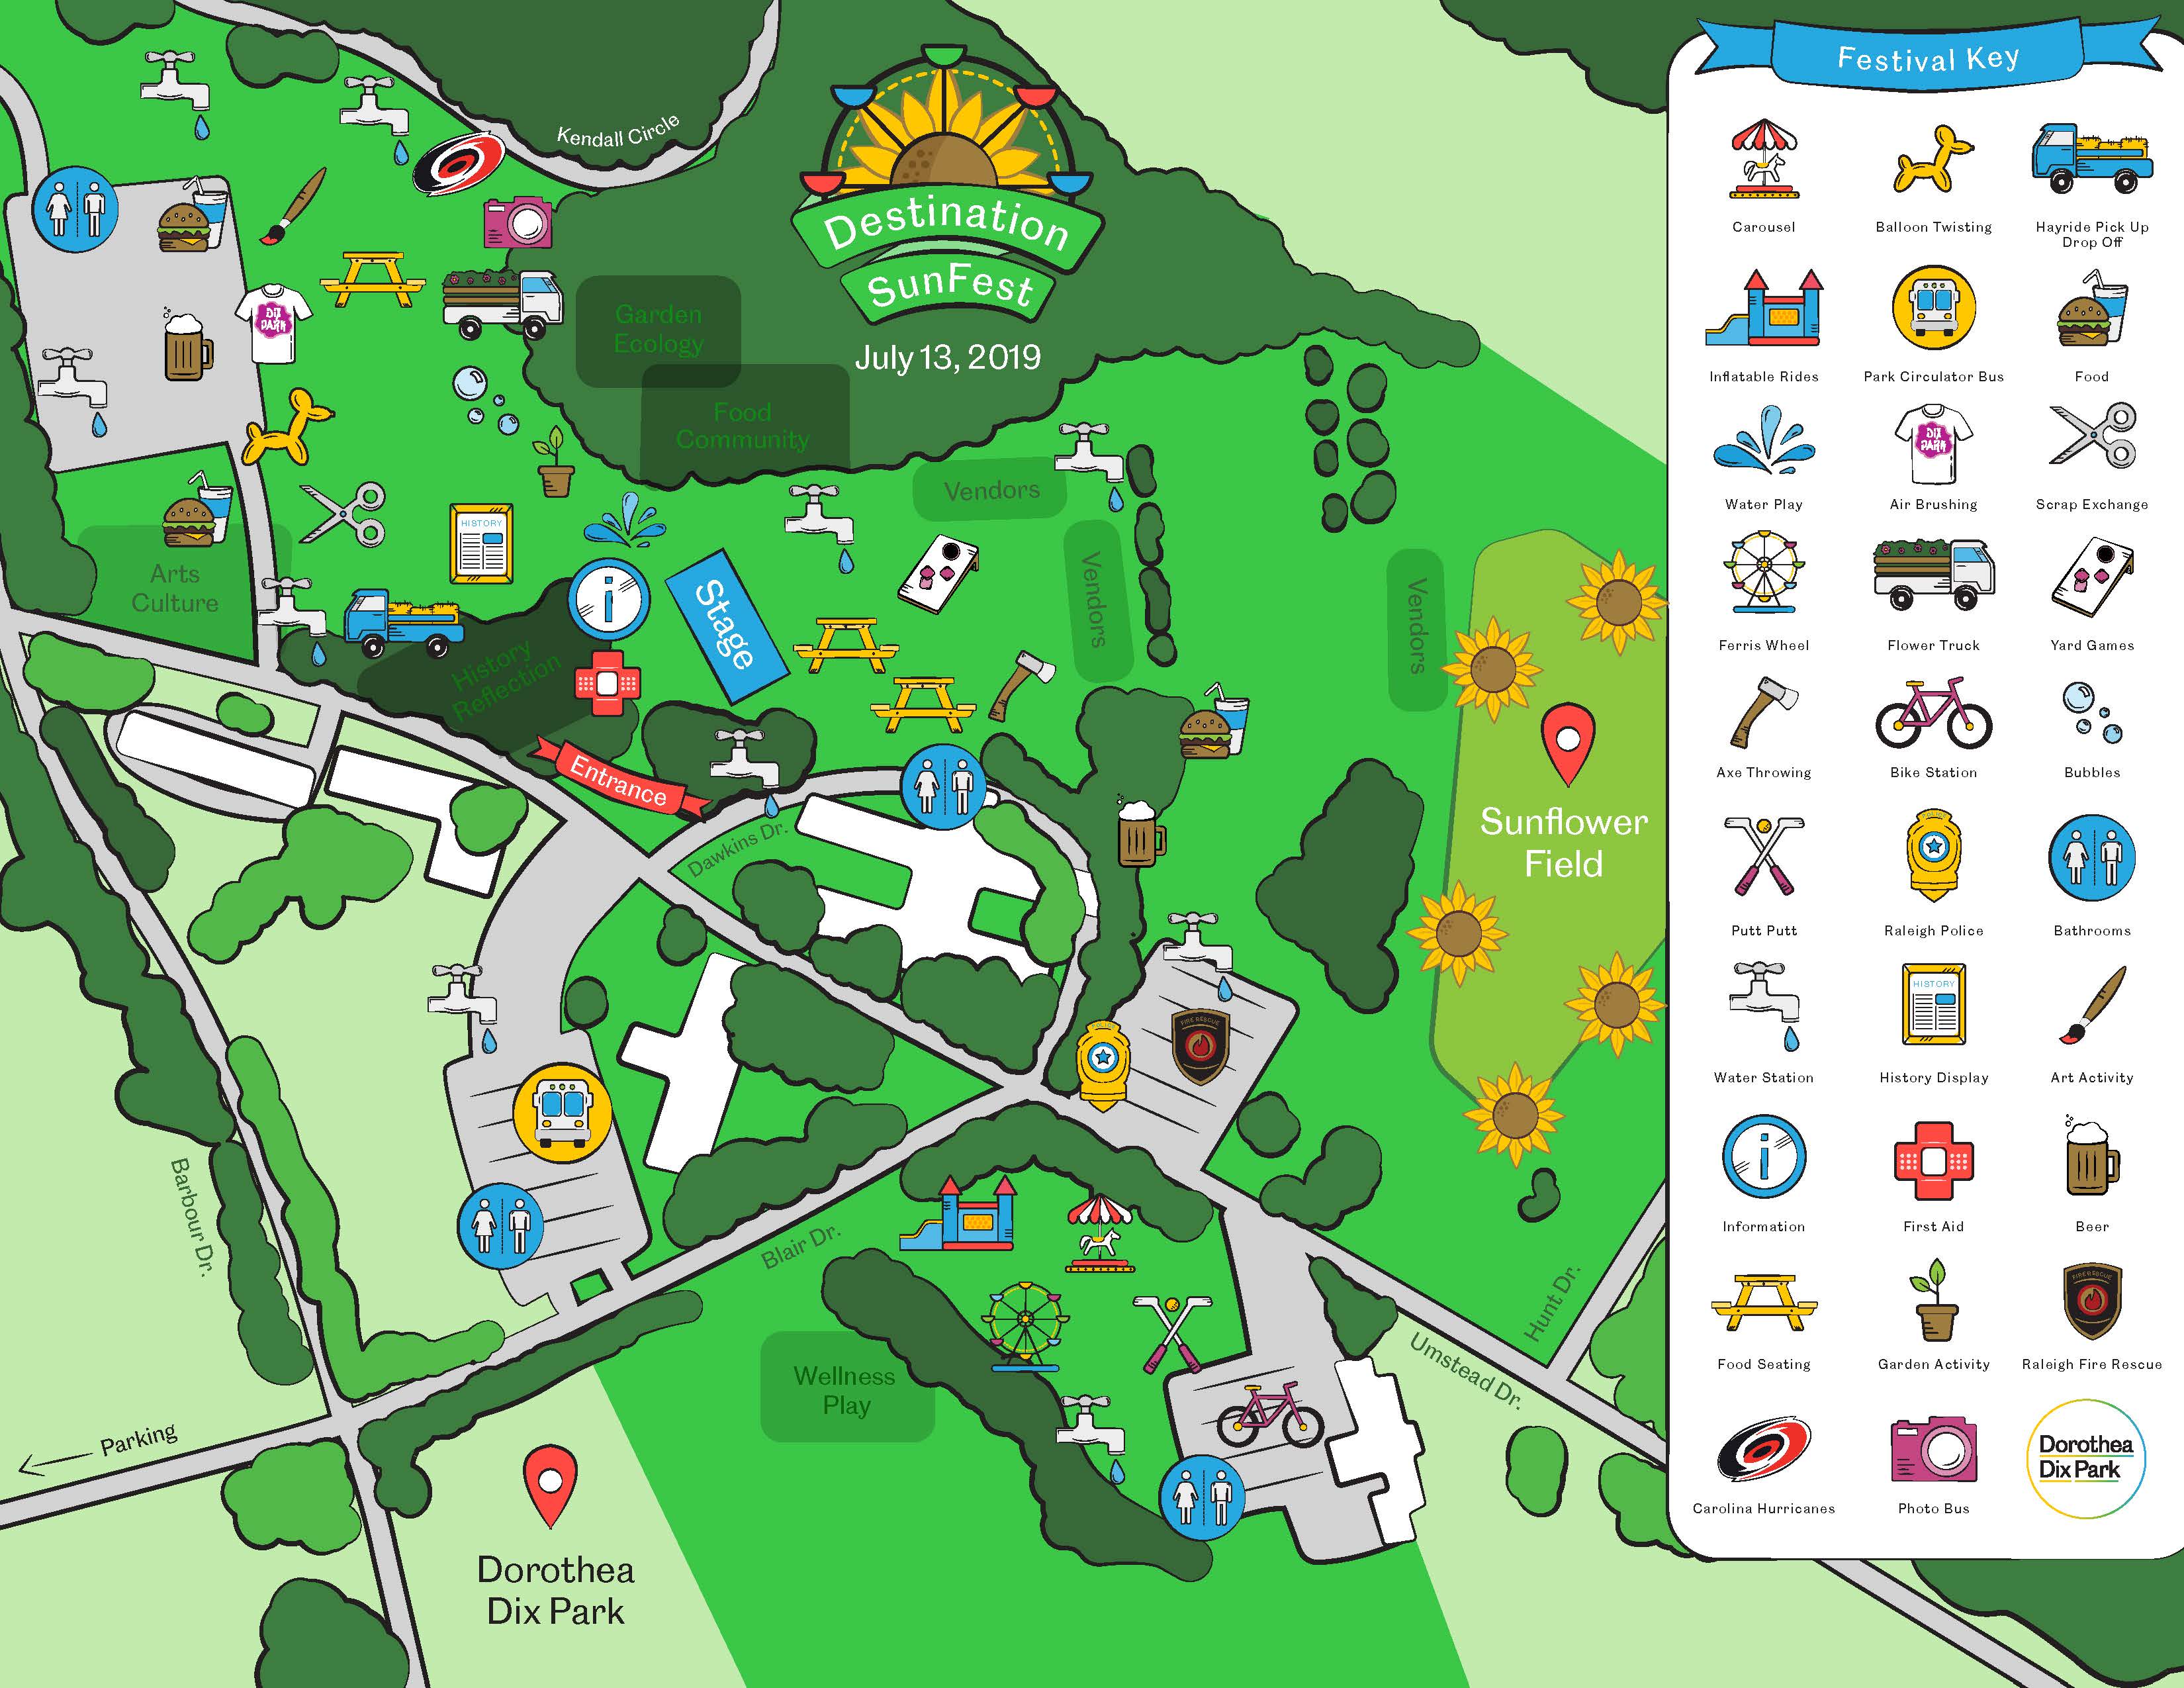 Destination SunFest Festival Map